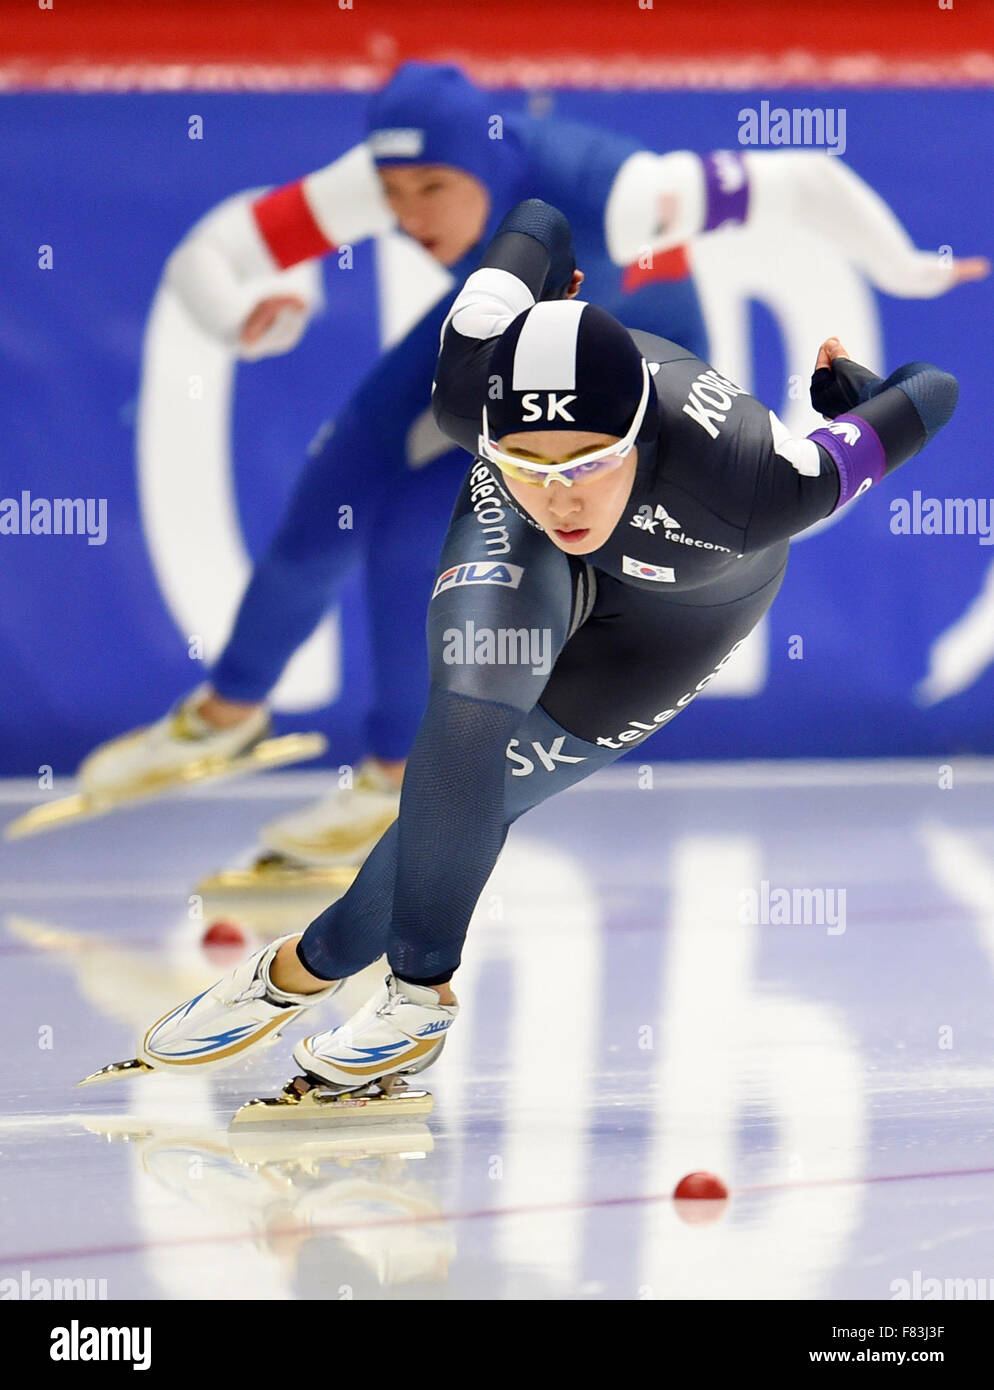 Inzell, Allemagne. 9Th Jul 2015. La Corée du Sud Lee Sang Hwa en action pendant le concours de 500 mètres de la coupe du monde de patinage de vitesse dans l'Arène de Max-Aicher à Inzell, Allemagne, 4 décembre 2015. Lee est arrivé 1er. PHOTO : TOBIAS HASE/DPA/Alamy Live News Banque D'Images